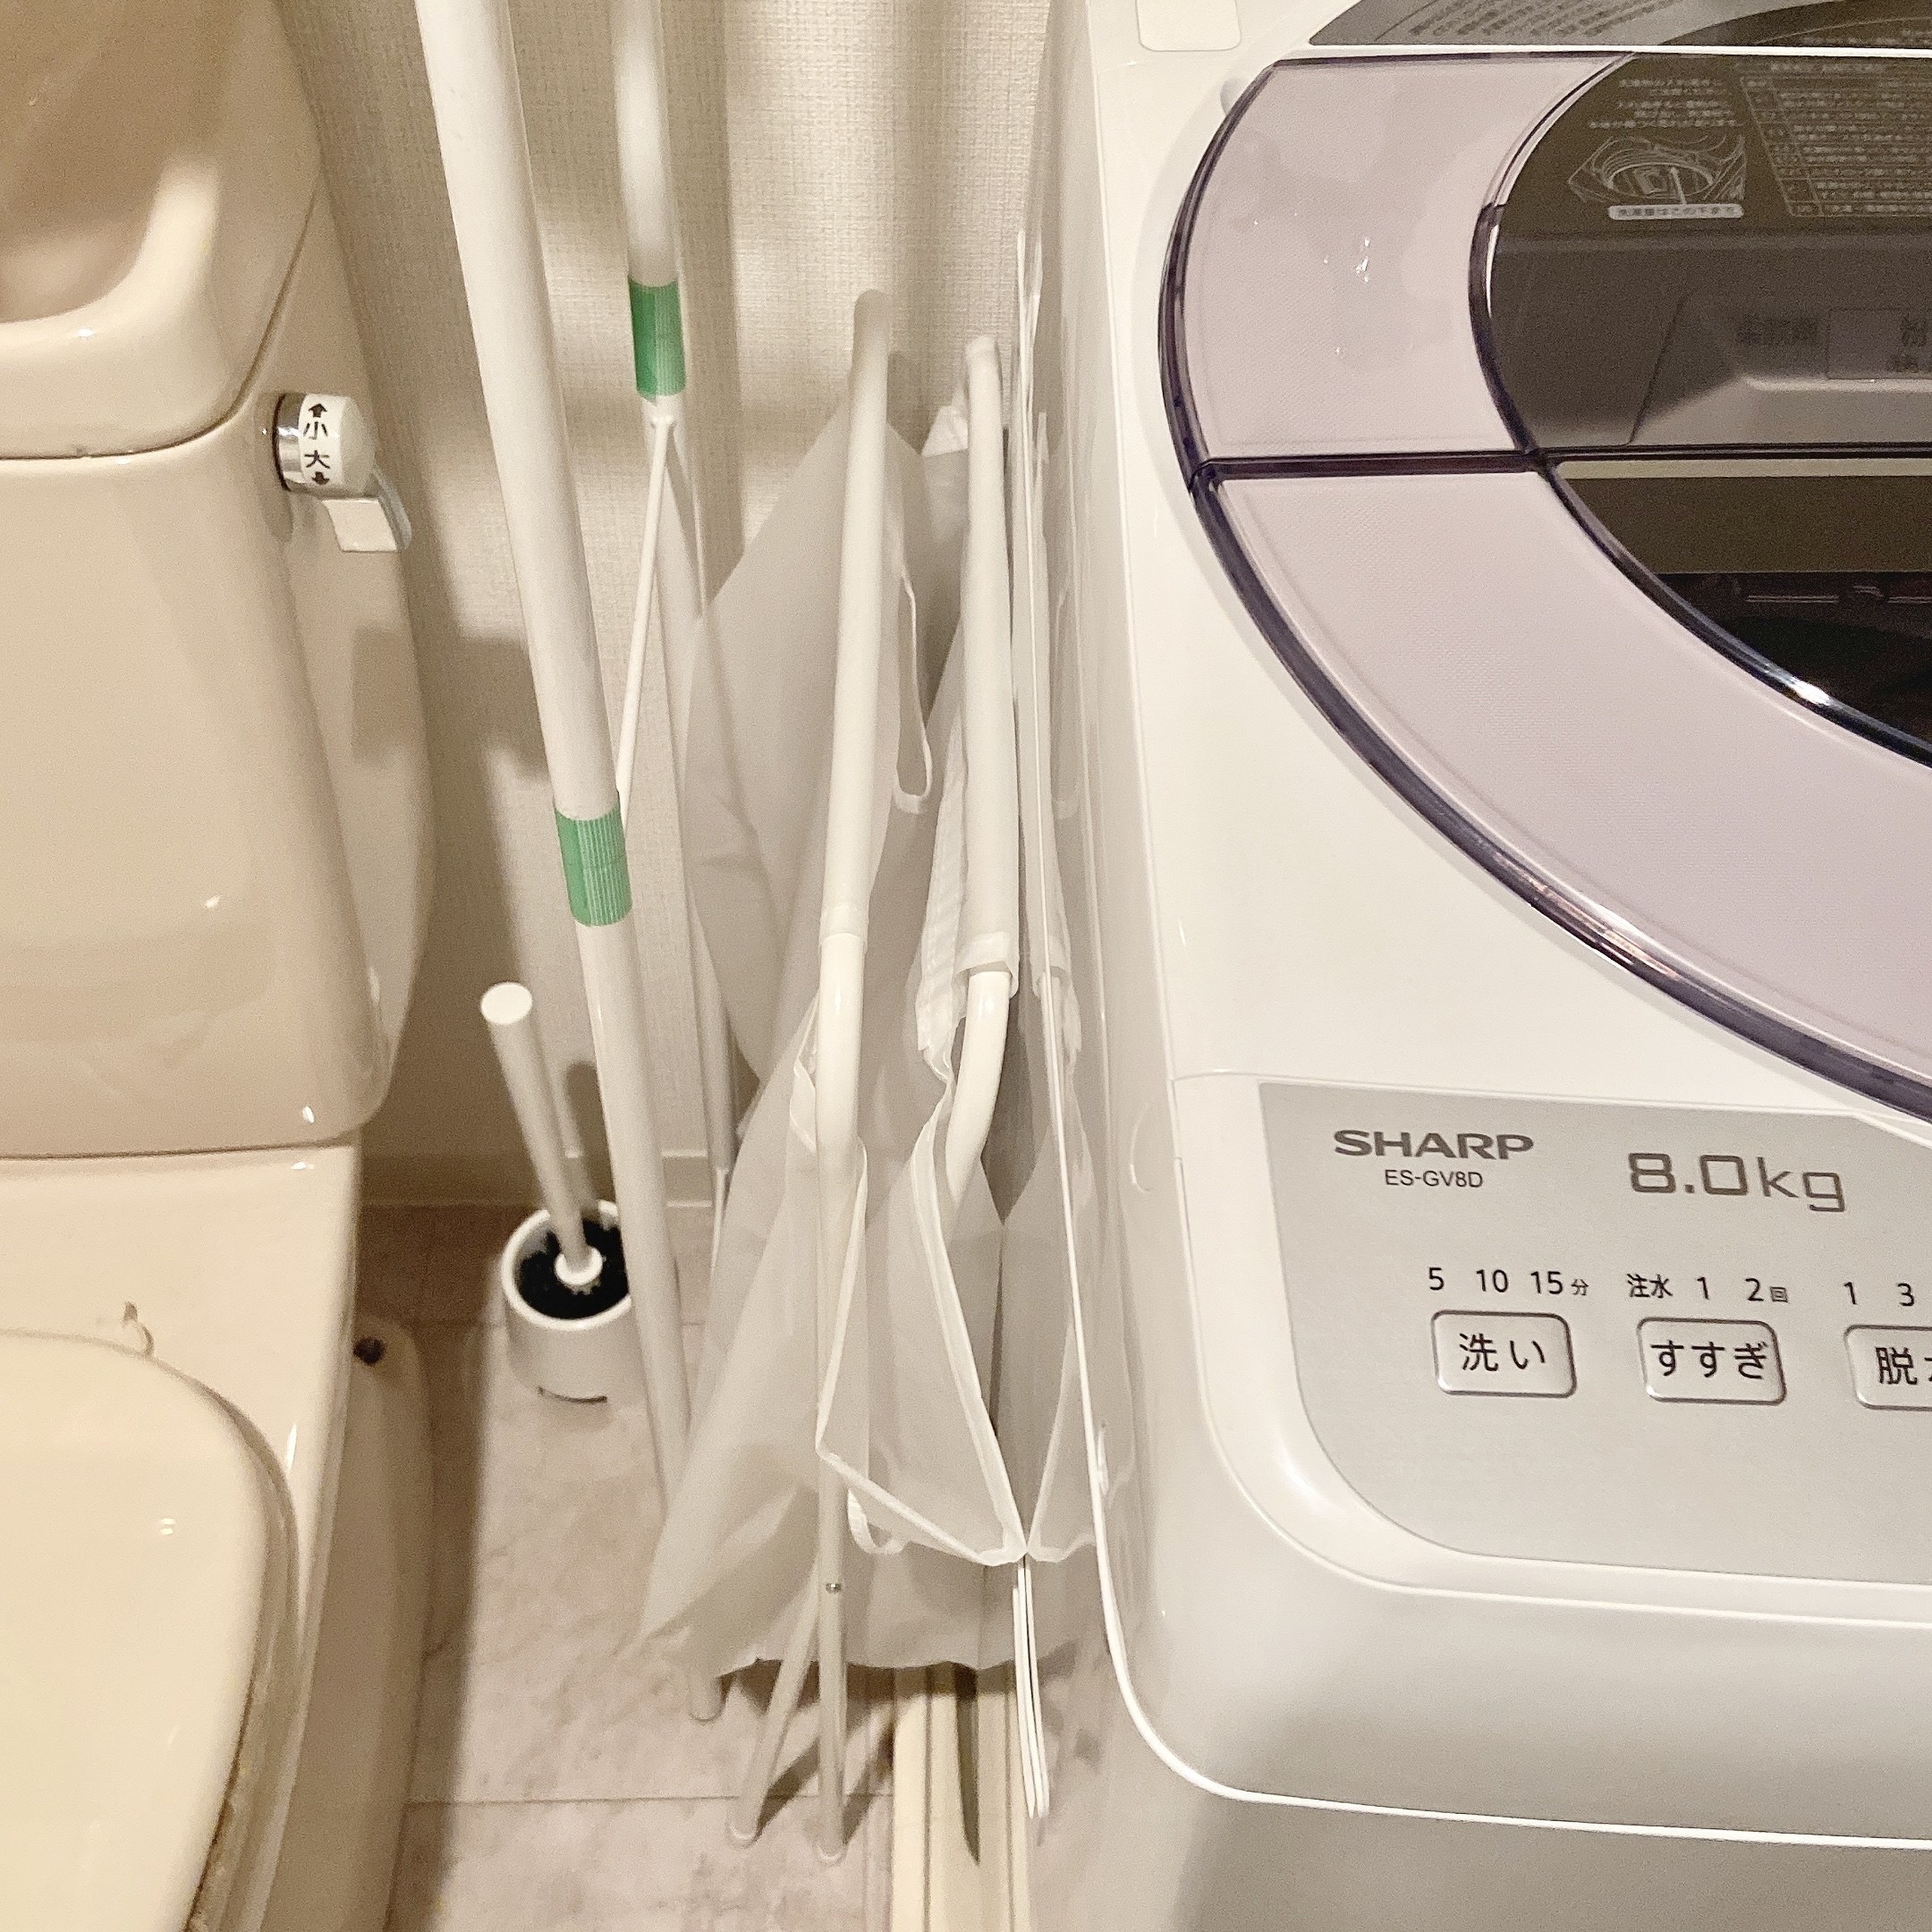 IKEA（イケア）のおすすめ洗濯グッズ「JÄLL イェル ランドリーバッグ スタンド付き」